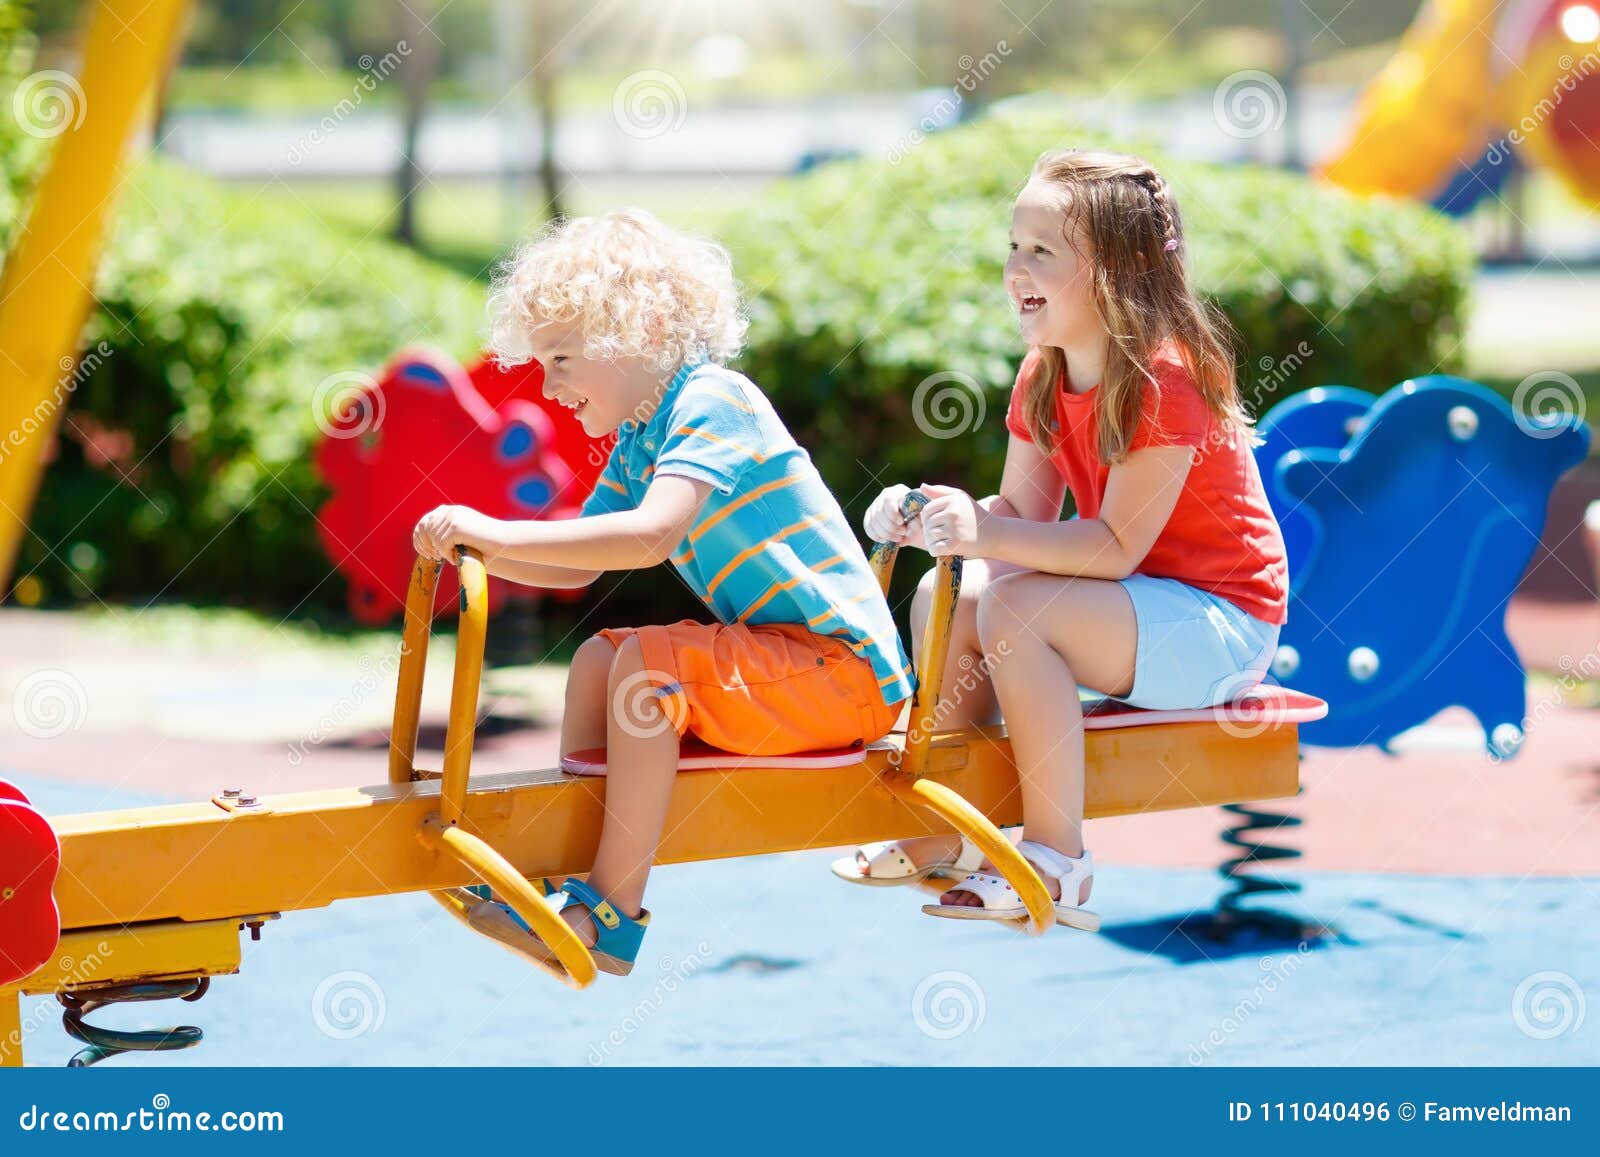 kids on playground. children play in summer park.